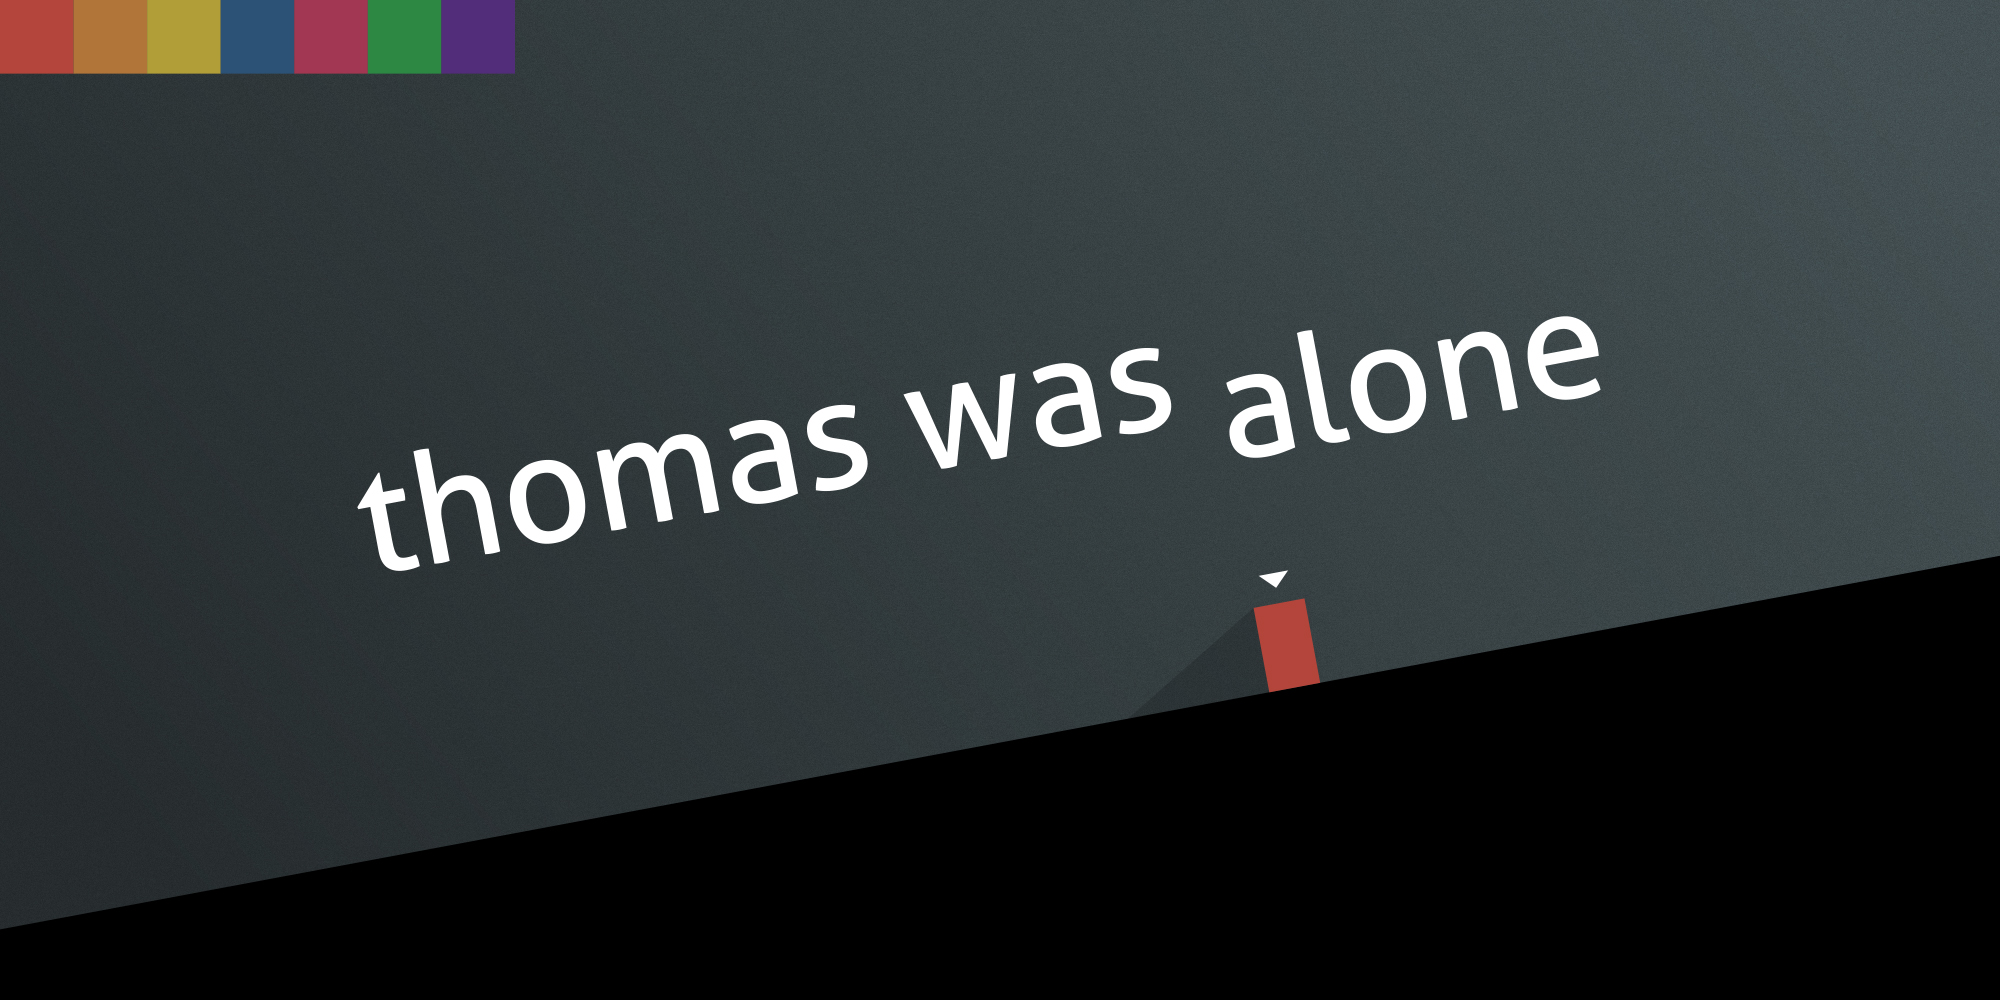 jaquette du jeu vidéo Thomas Was Alone